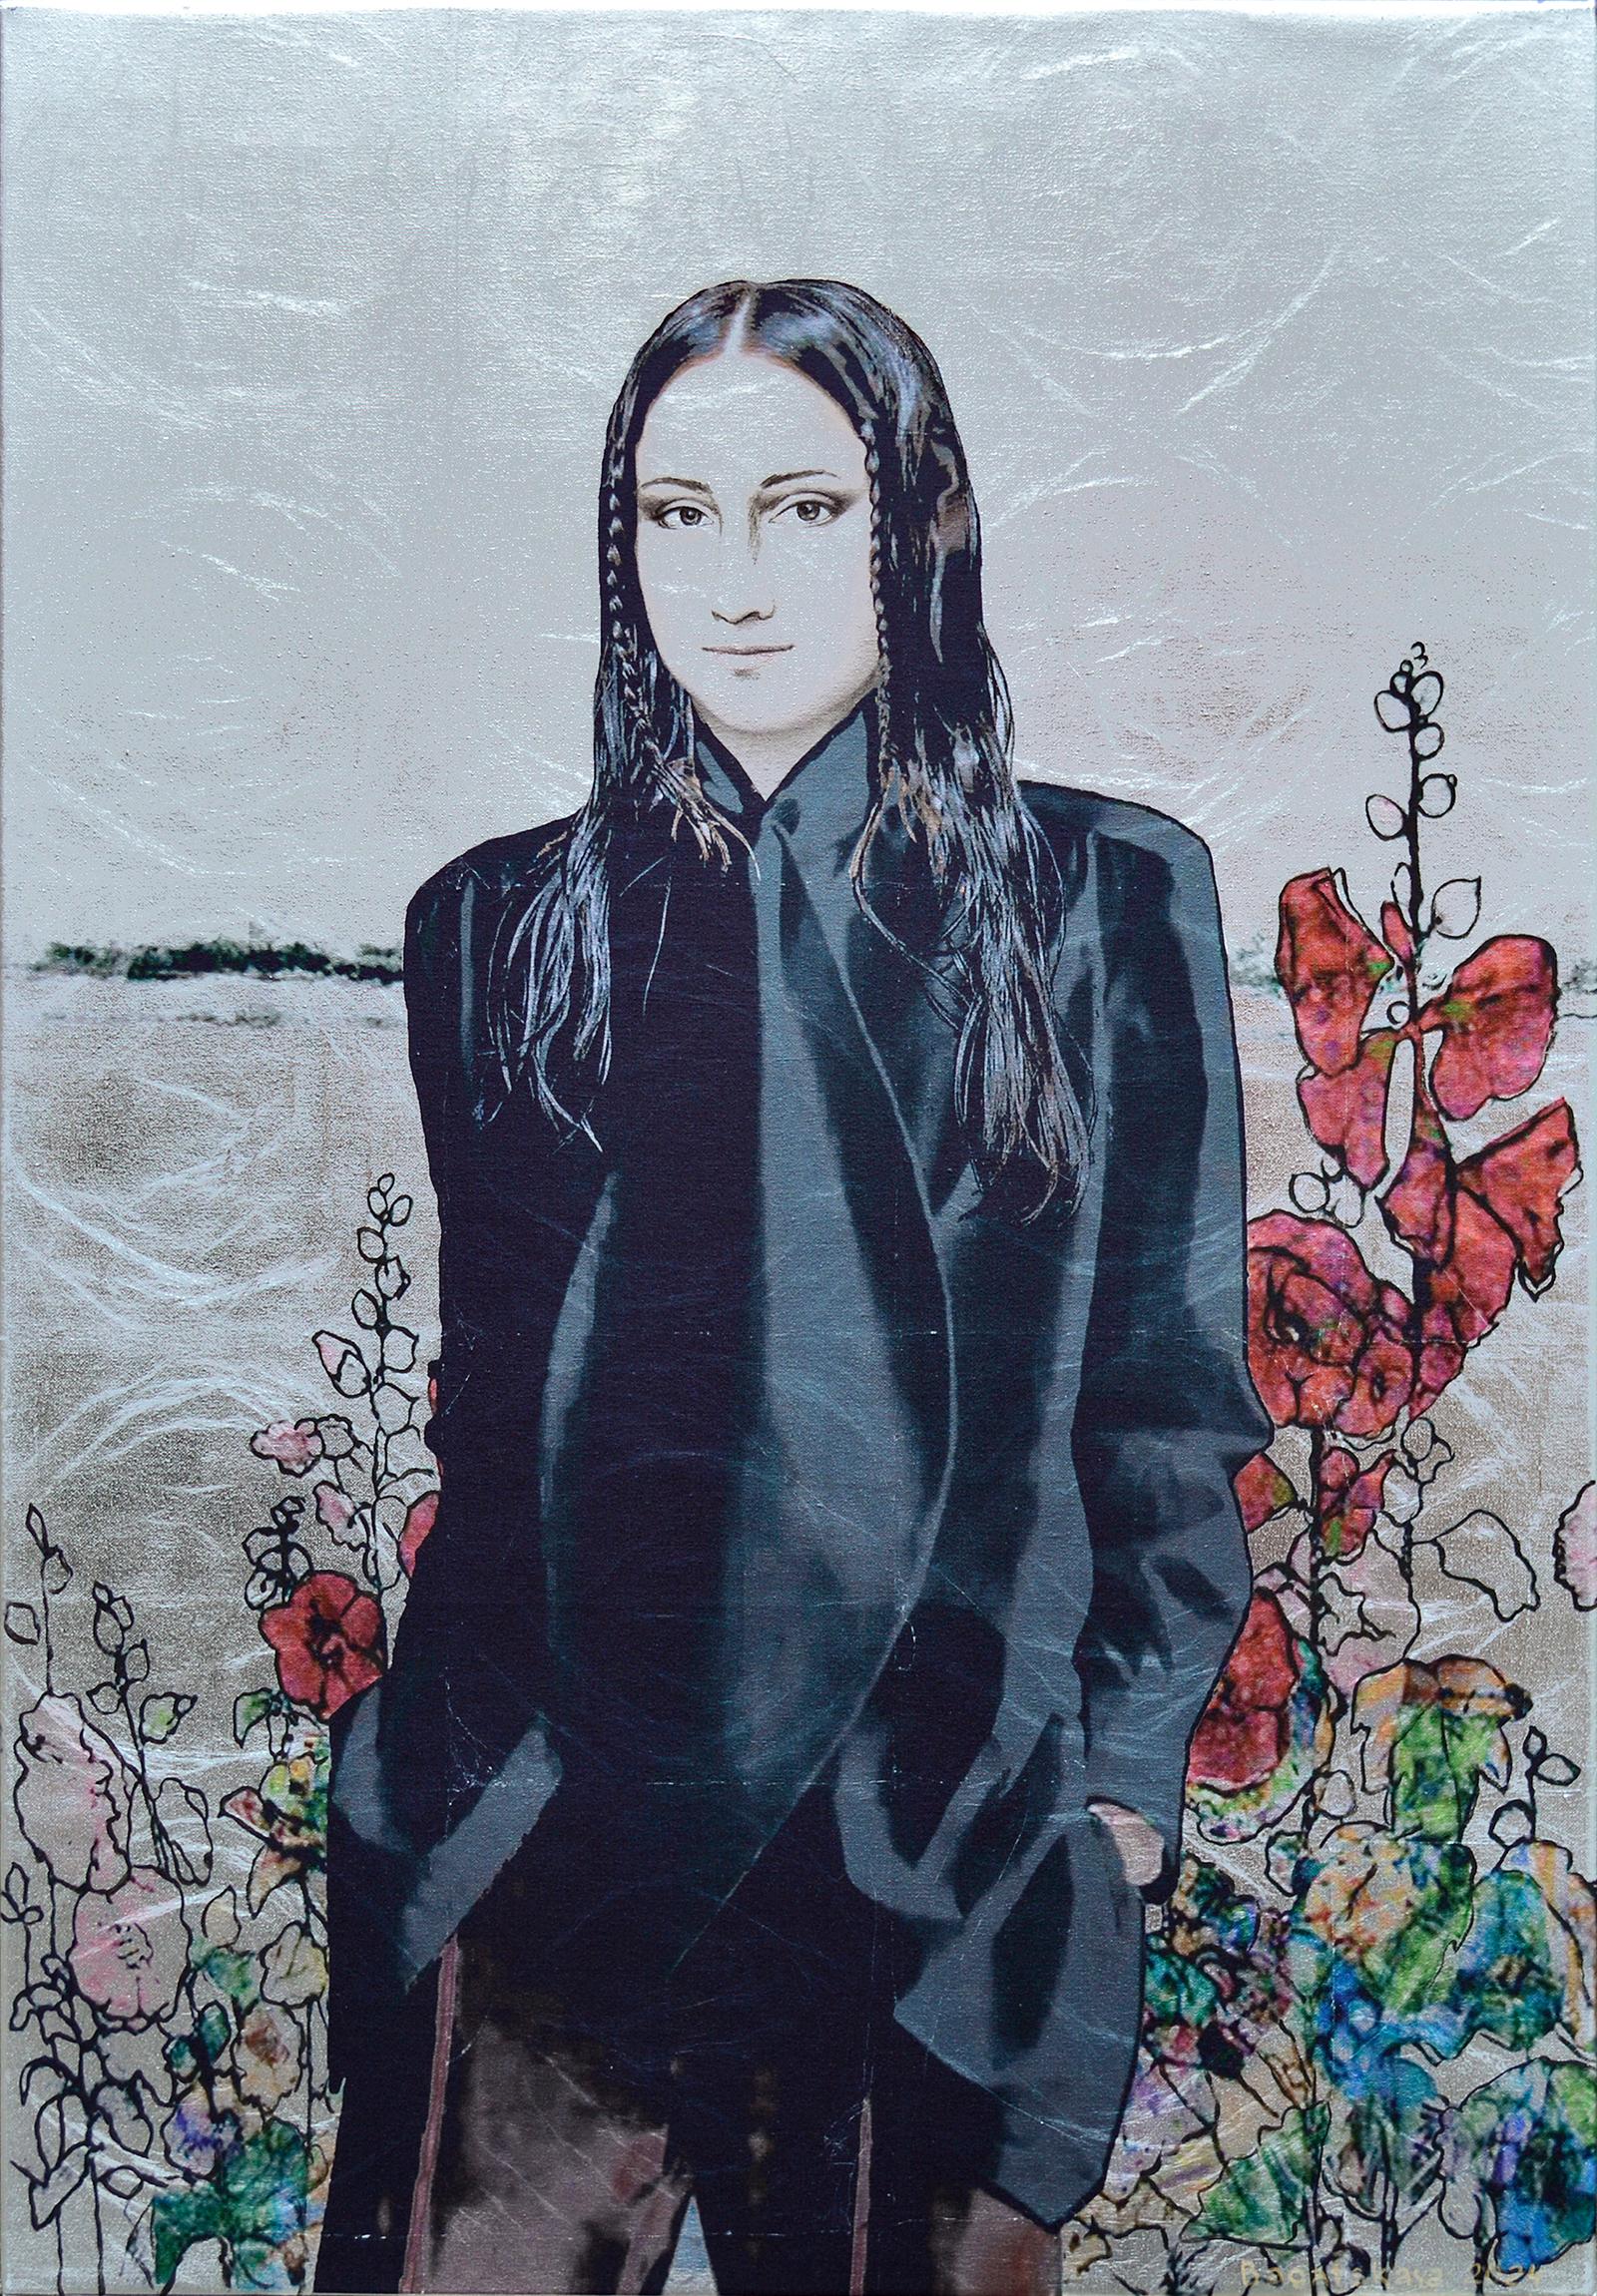 Portrait imprimé contemporain "In the FIeld among the Flowers" (Dans le champ parmi les fleurs)